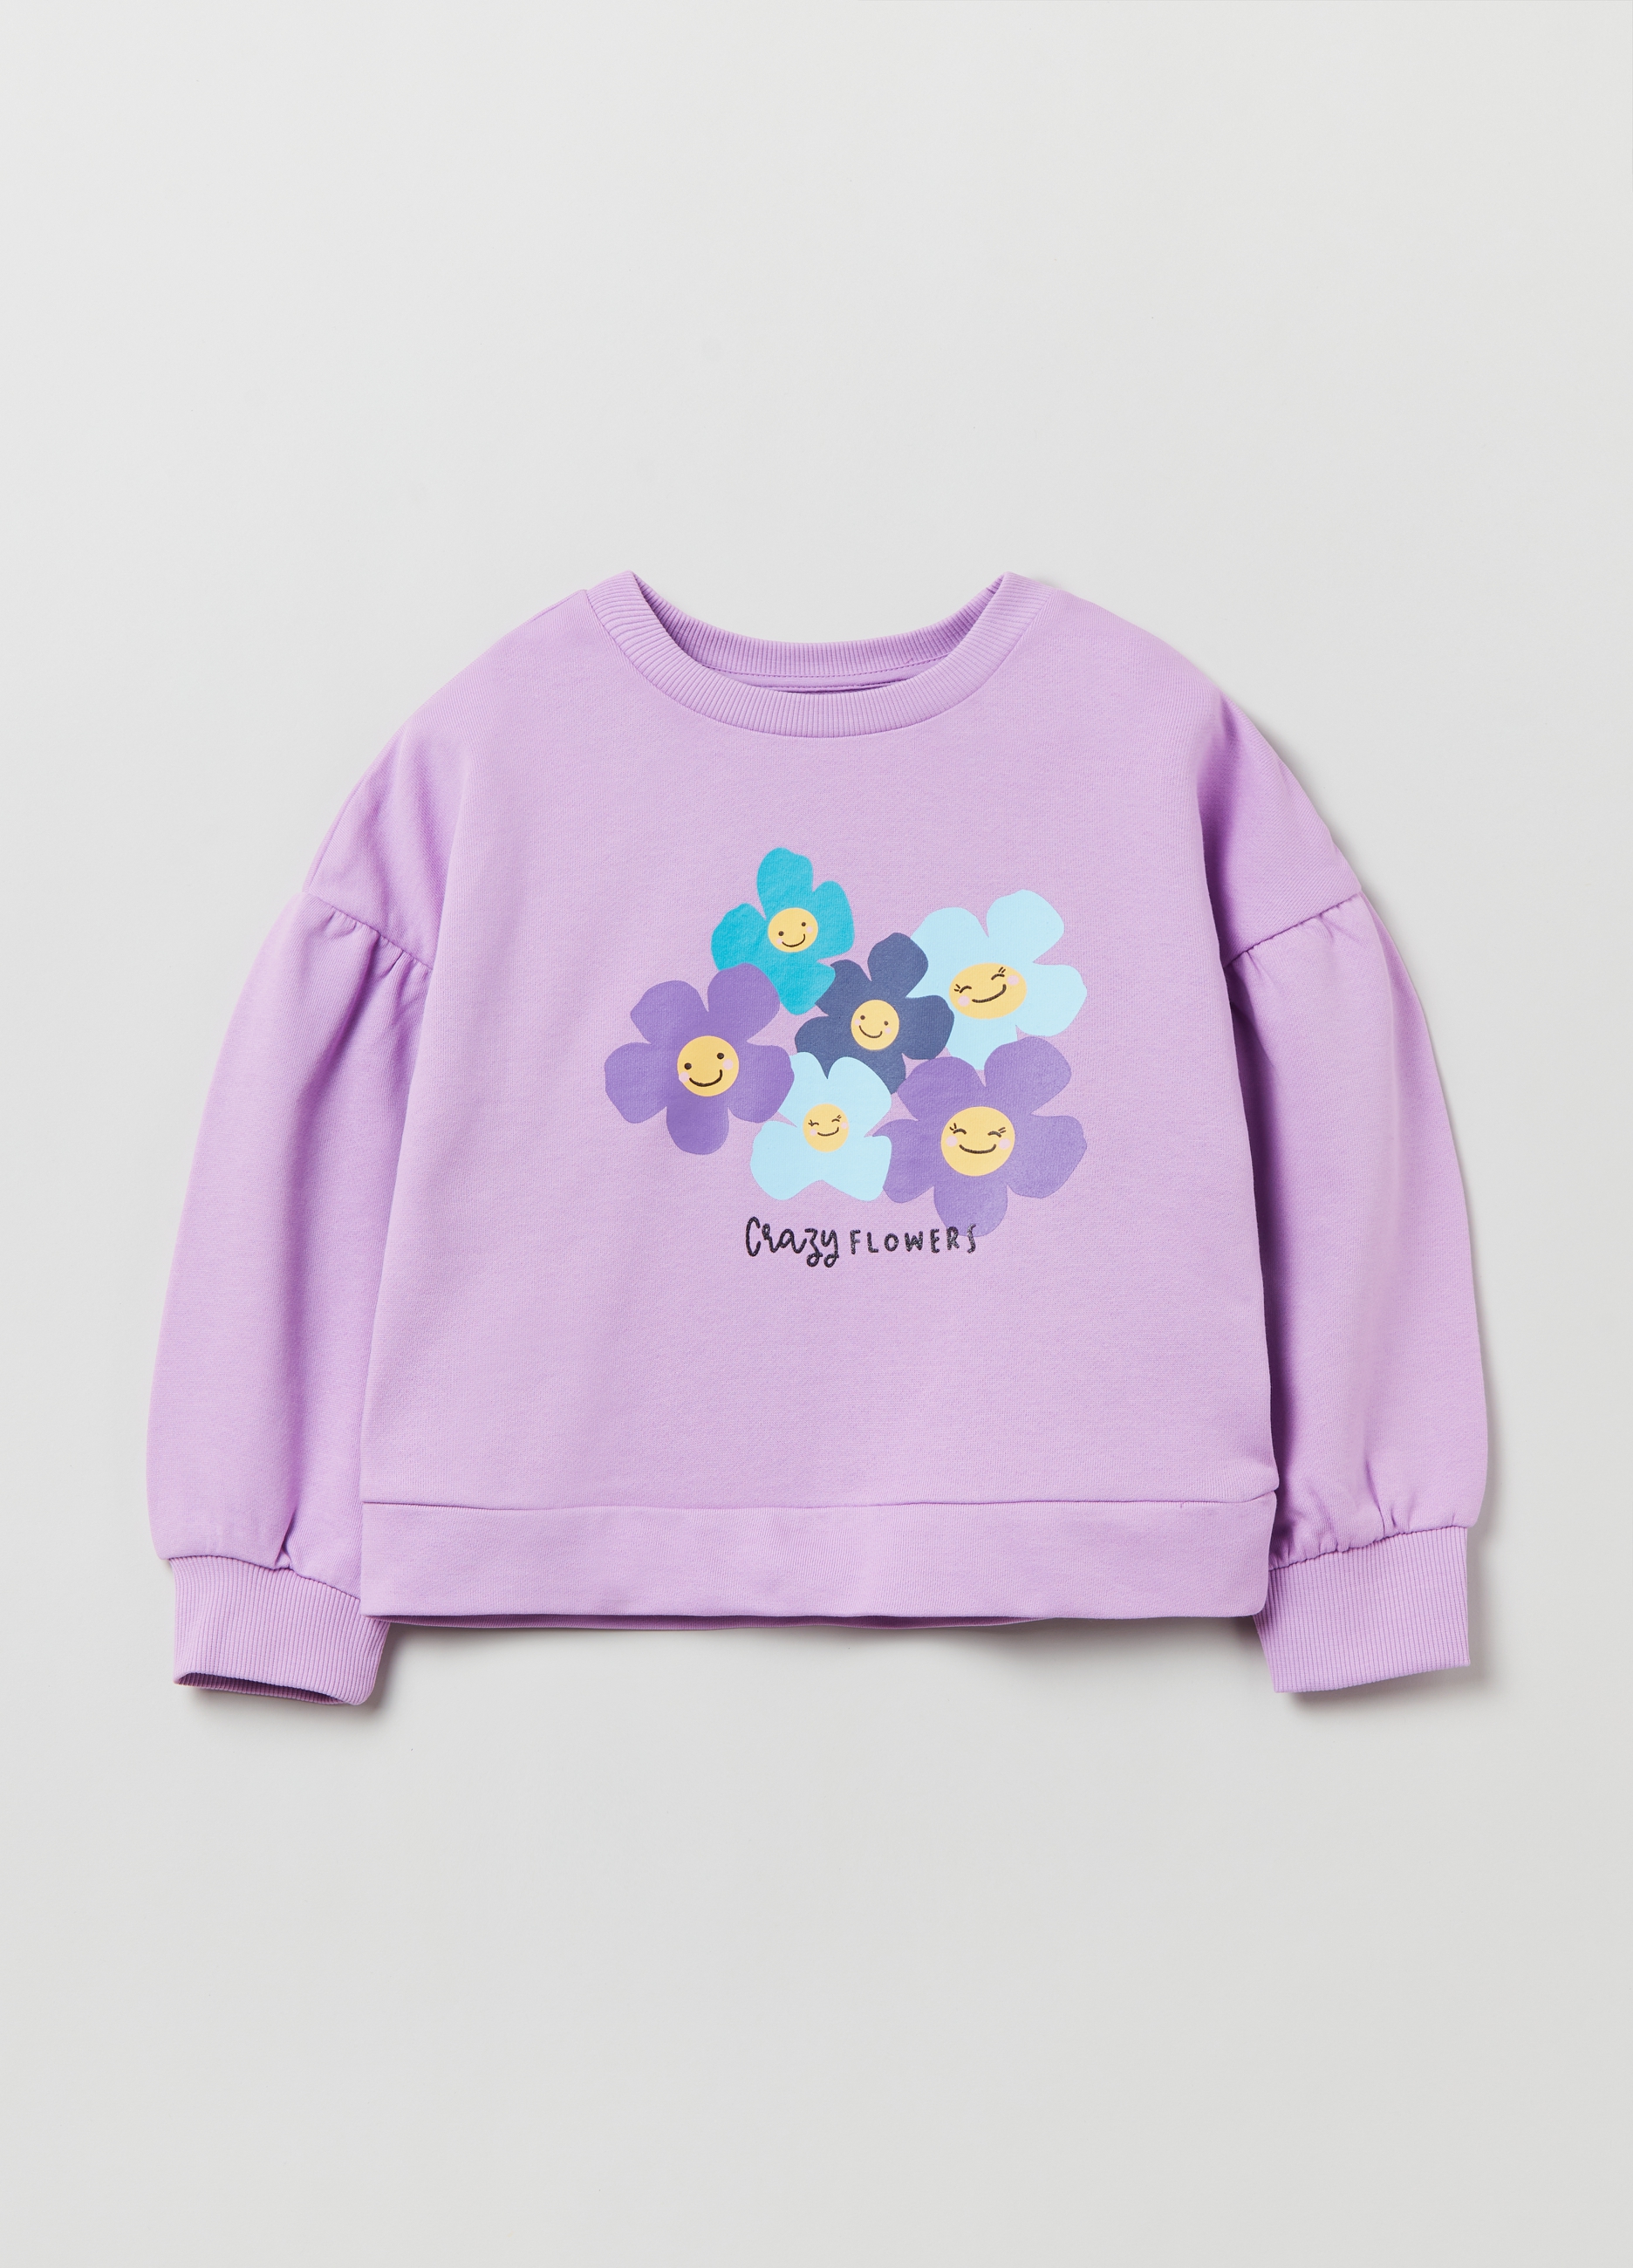 Фуфайка OVS для девочек, фиолетовая, 9-10 лет, 1893089 комплект для девочек фуфайка трикотажная футболка шорты текстильные